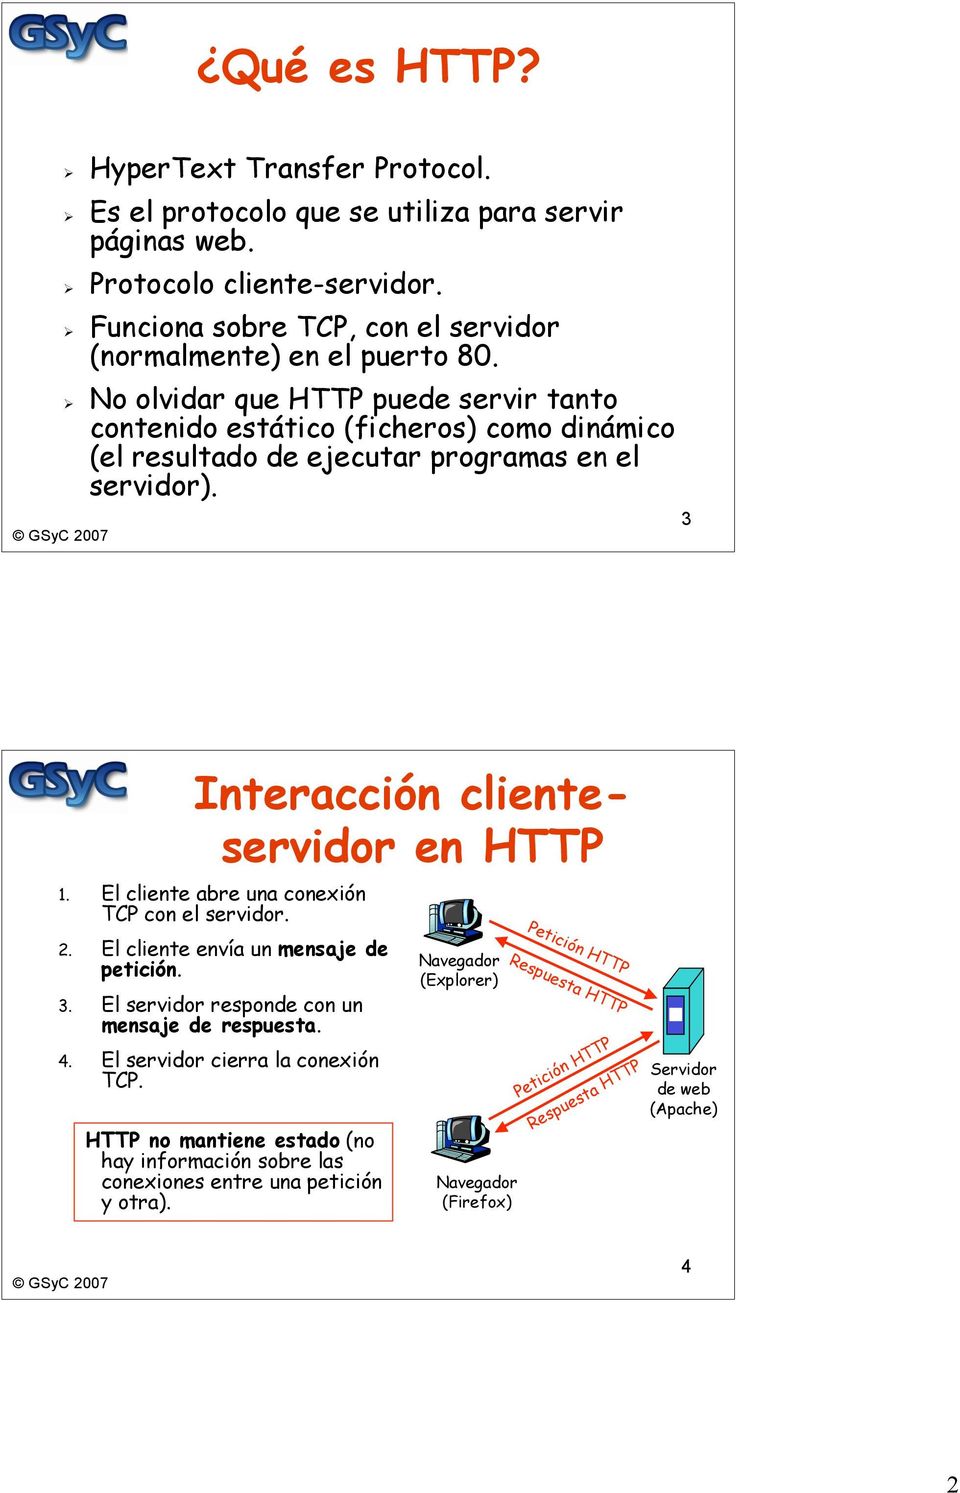 El cliente abre una conexión TCP con el servidor. 2. El cliente envía un mensaje de petición. 3. El servidor responde con un mensaje de respuesta. 4. El servidor cierra la conexión TCP.